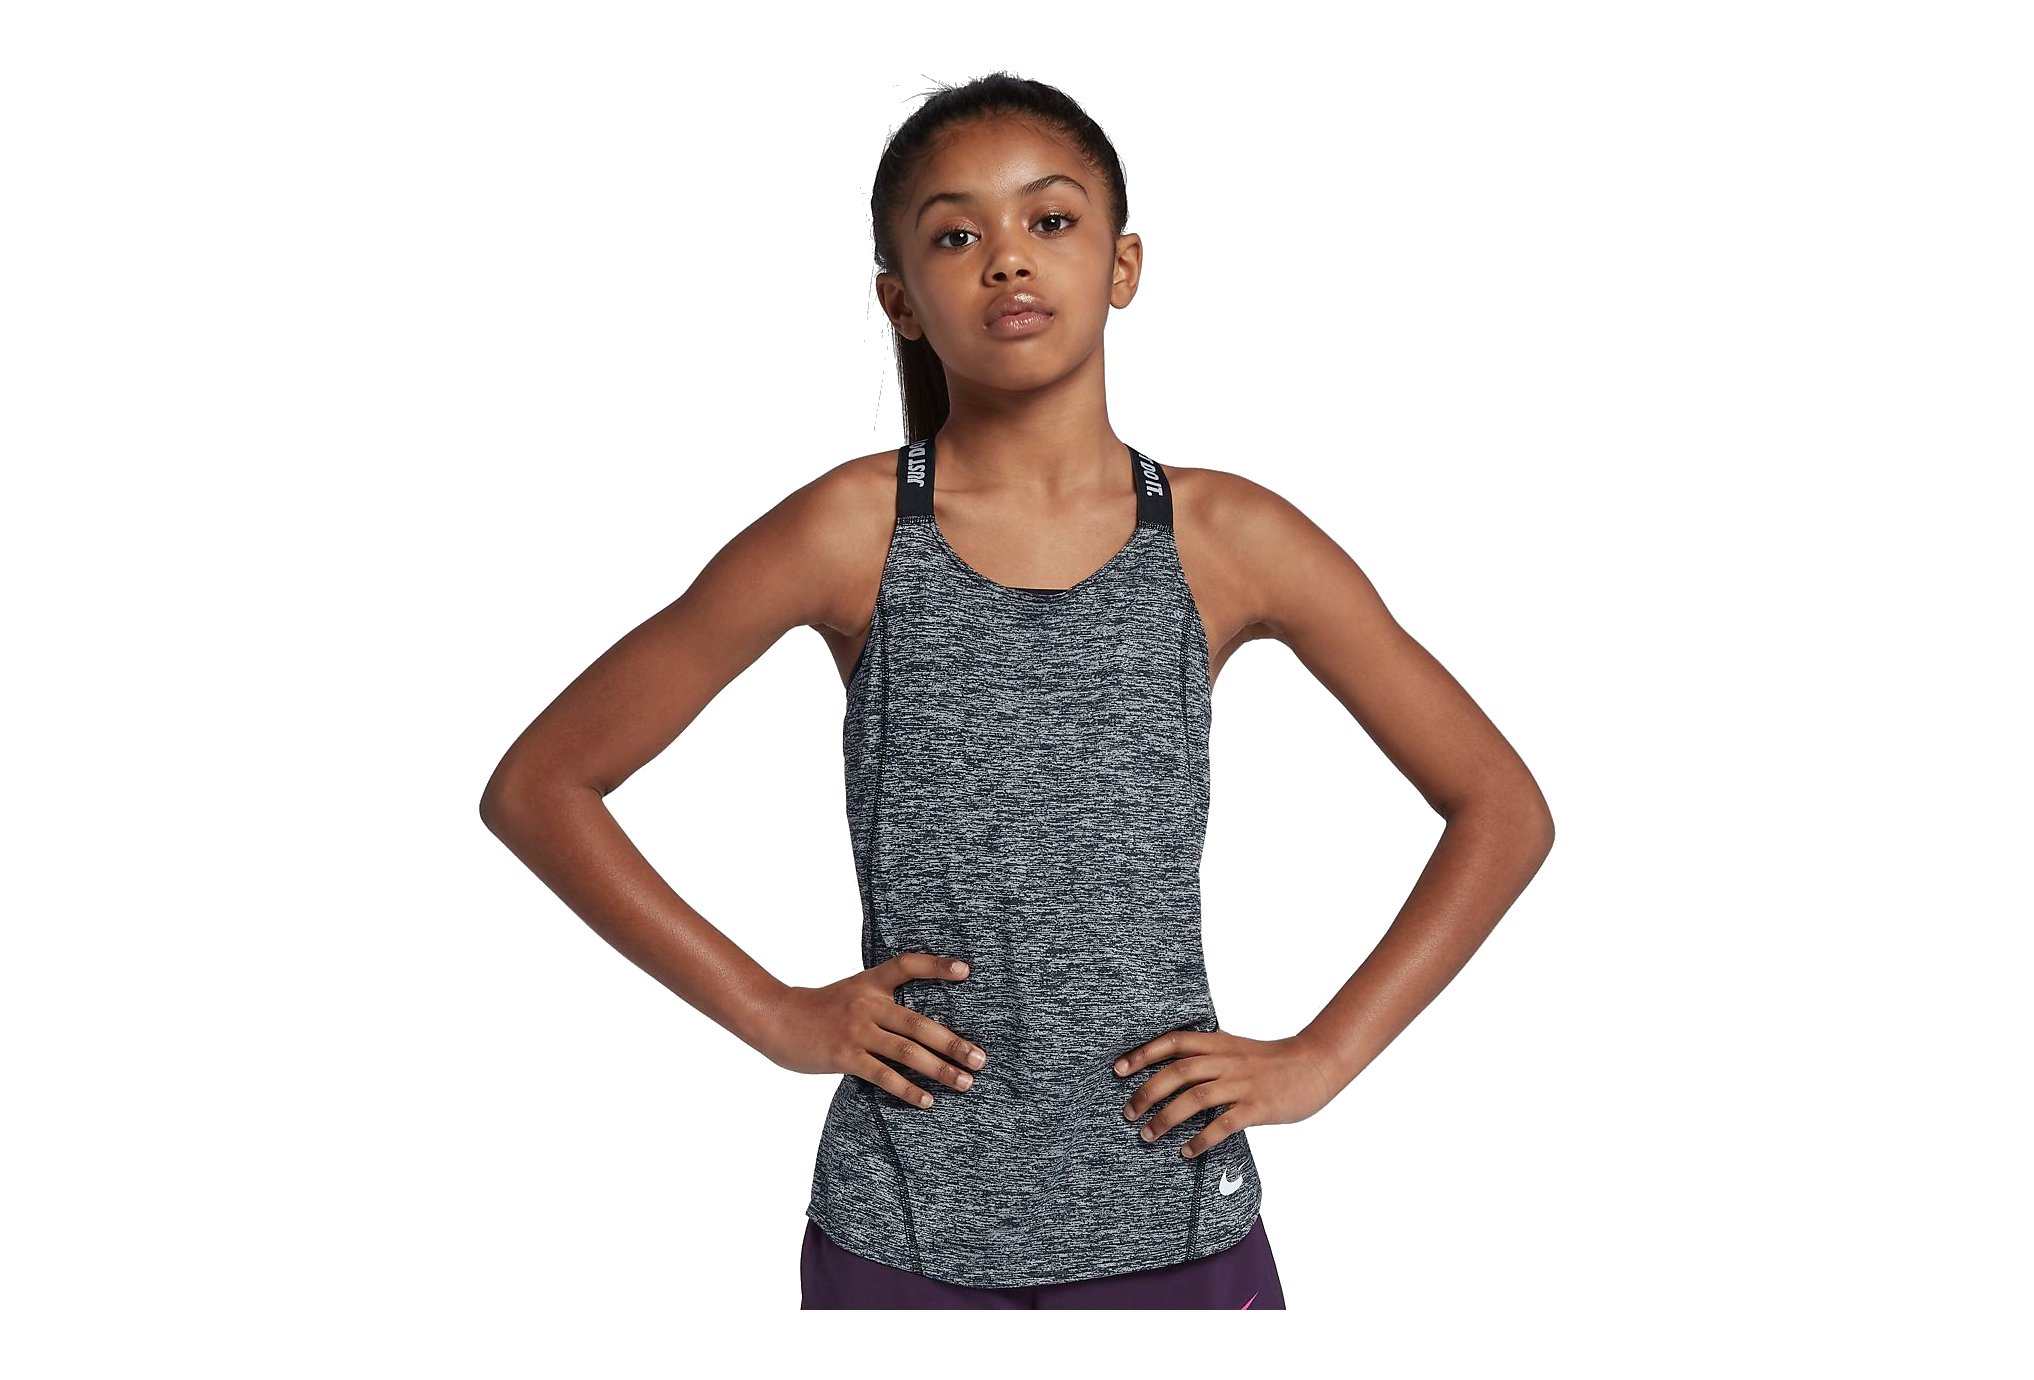 Nike Dry elastika fille vtement running femme